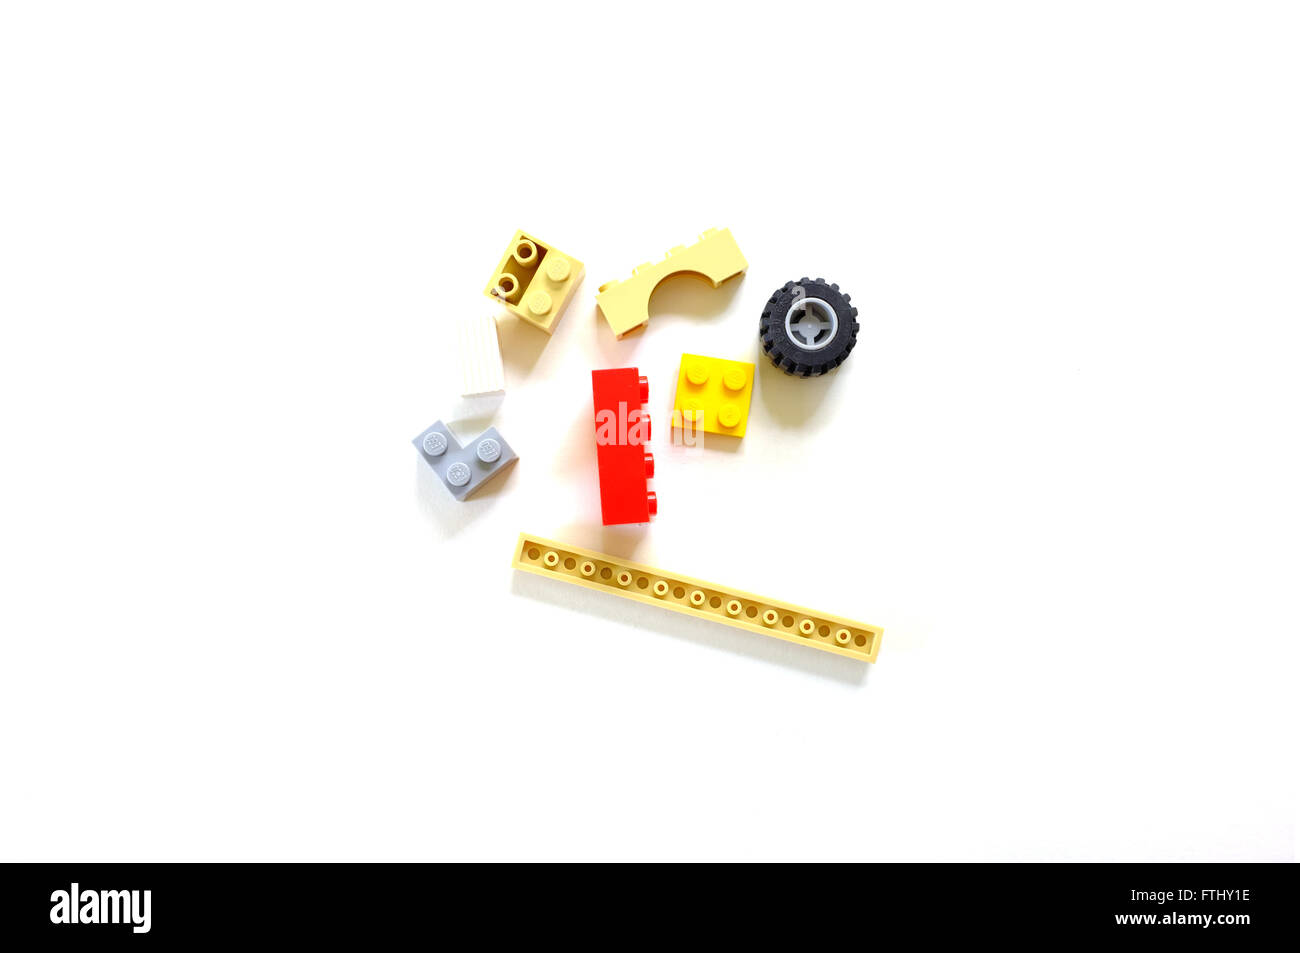 Ein Haufen von Lego-Steinen auf einem weißen Hintergrund fotografiert. Stockfoto